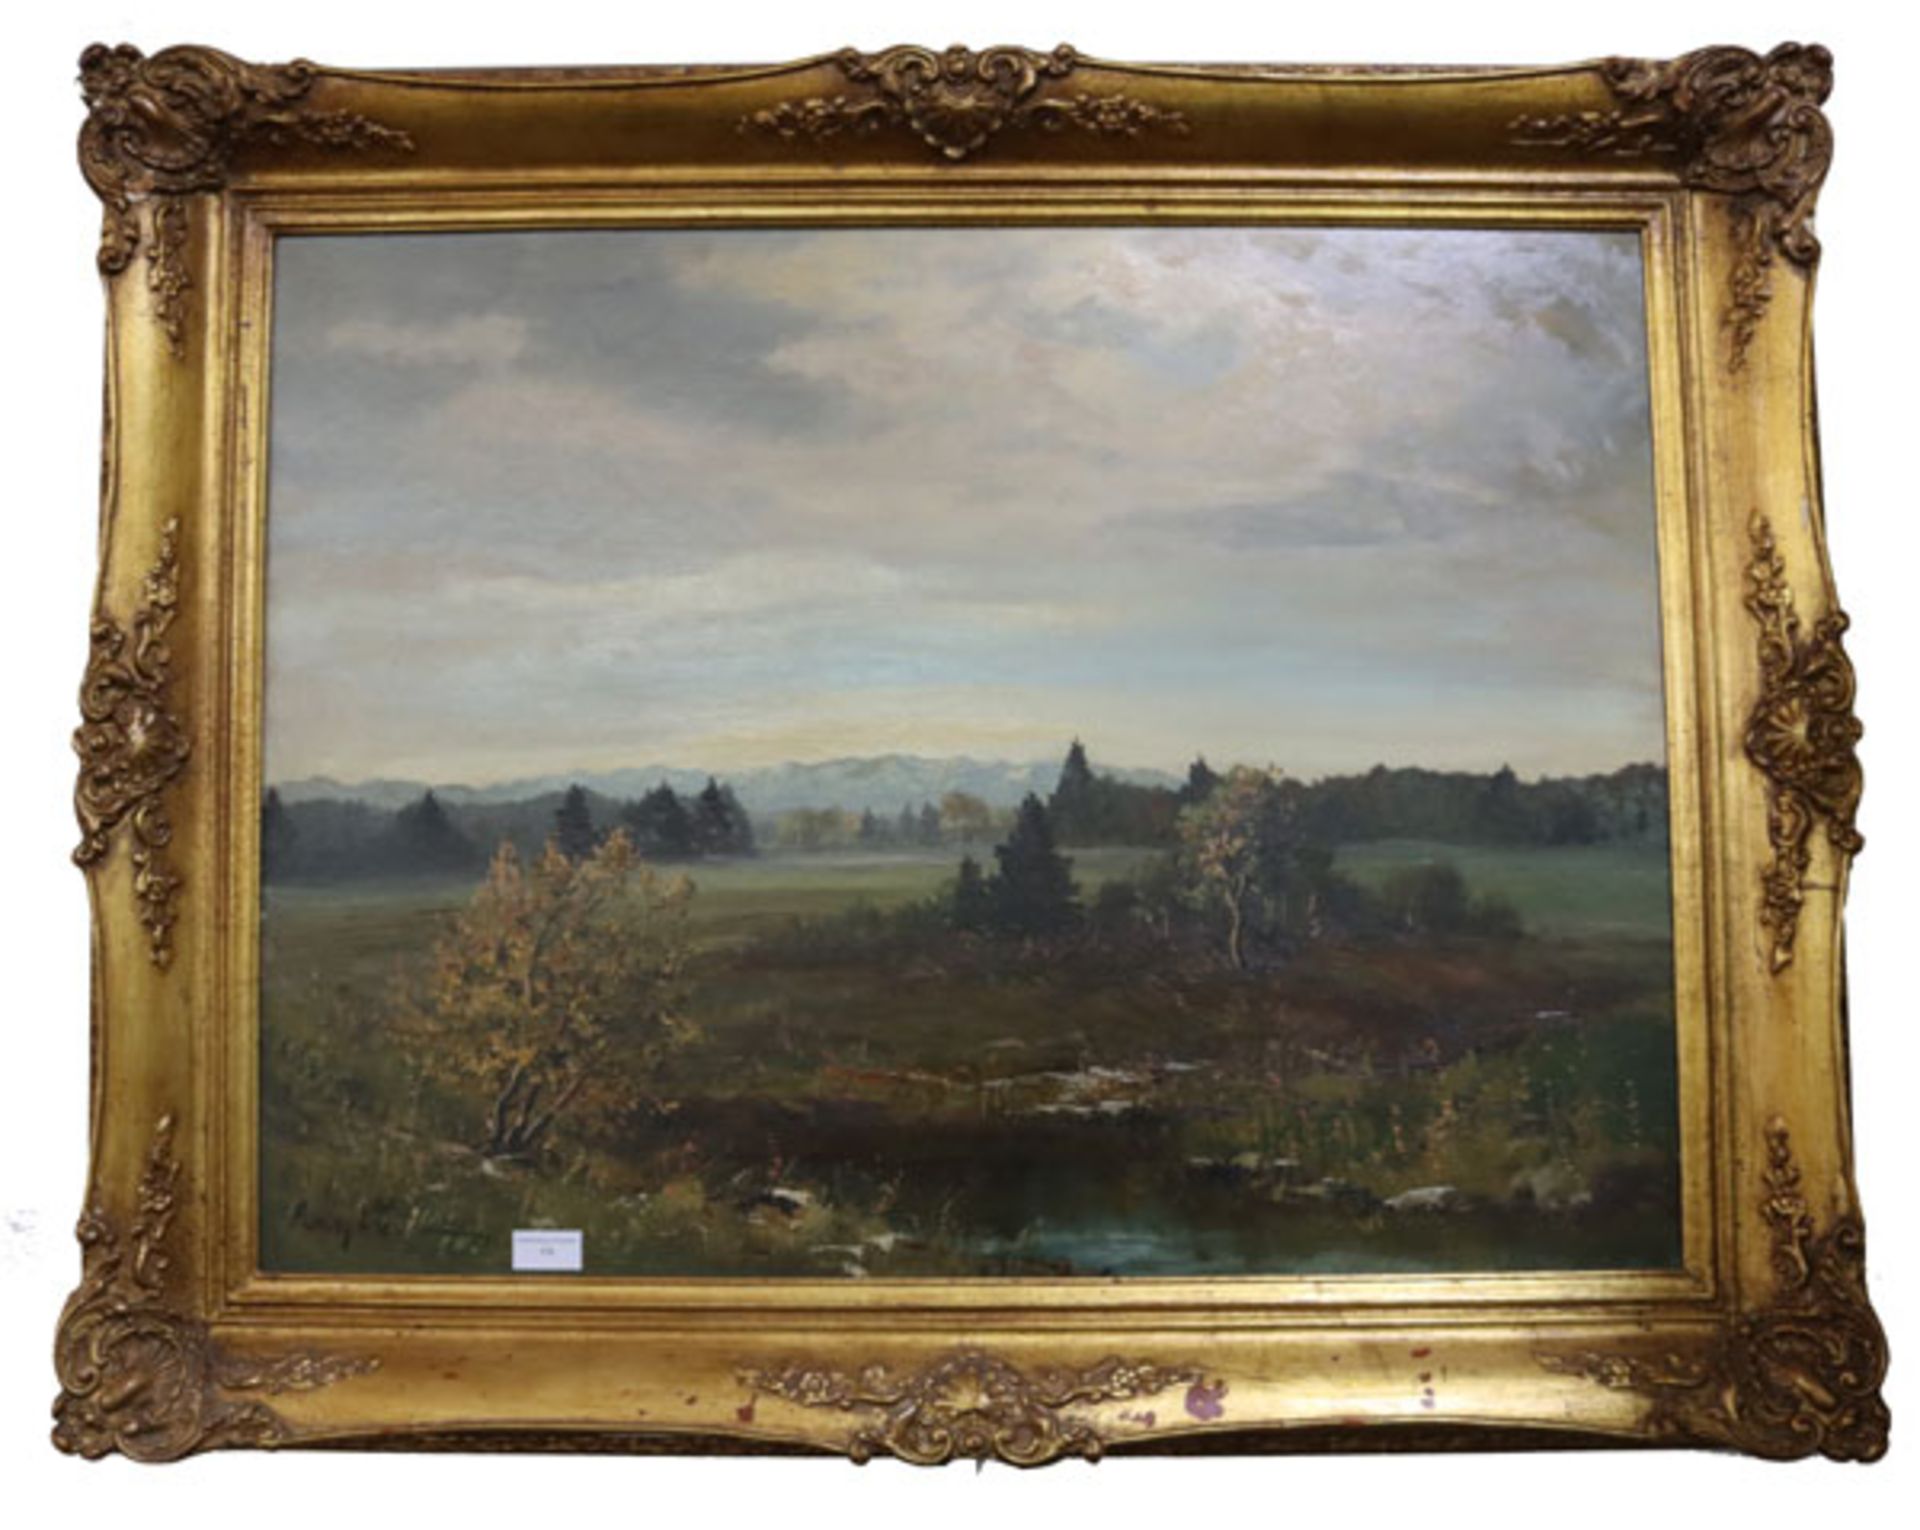 Gemälde ÖL/Hartfaser 'Murnauer Moor', signiert Ludwig Wiedemann, * 1934 München + 2008 Allgäu,